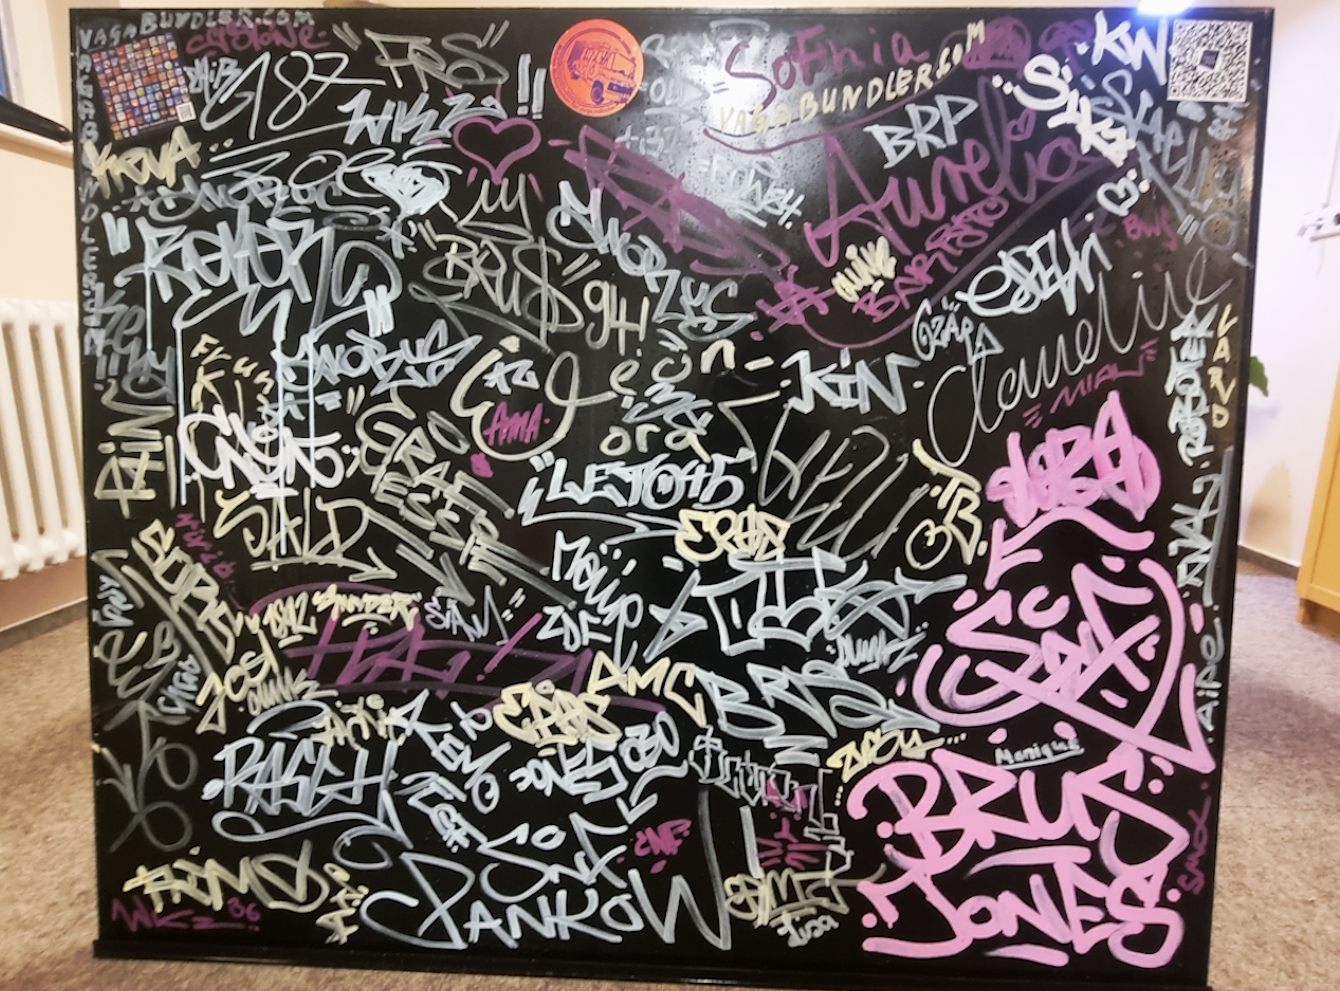 Schwarze Tafel mit unzähligen Tags (Unterschriften von Graffiti-Künstlern)